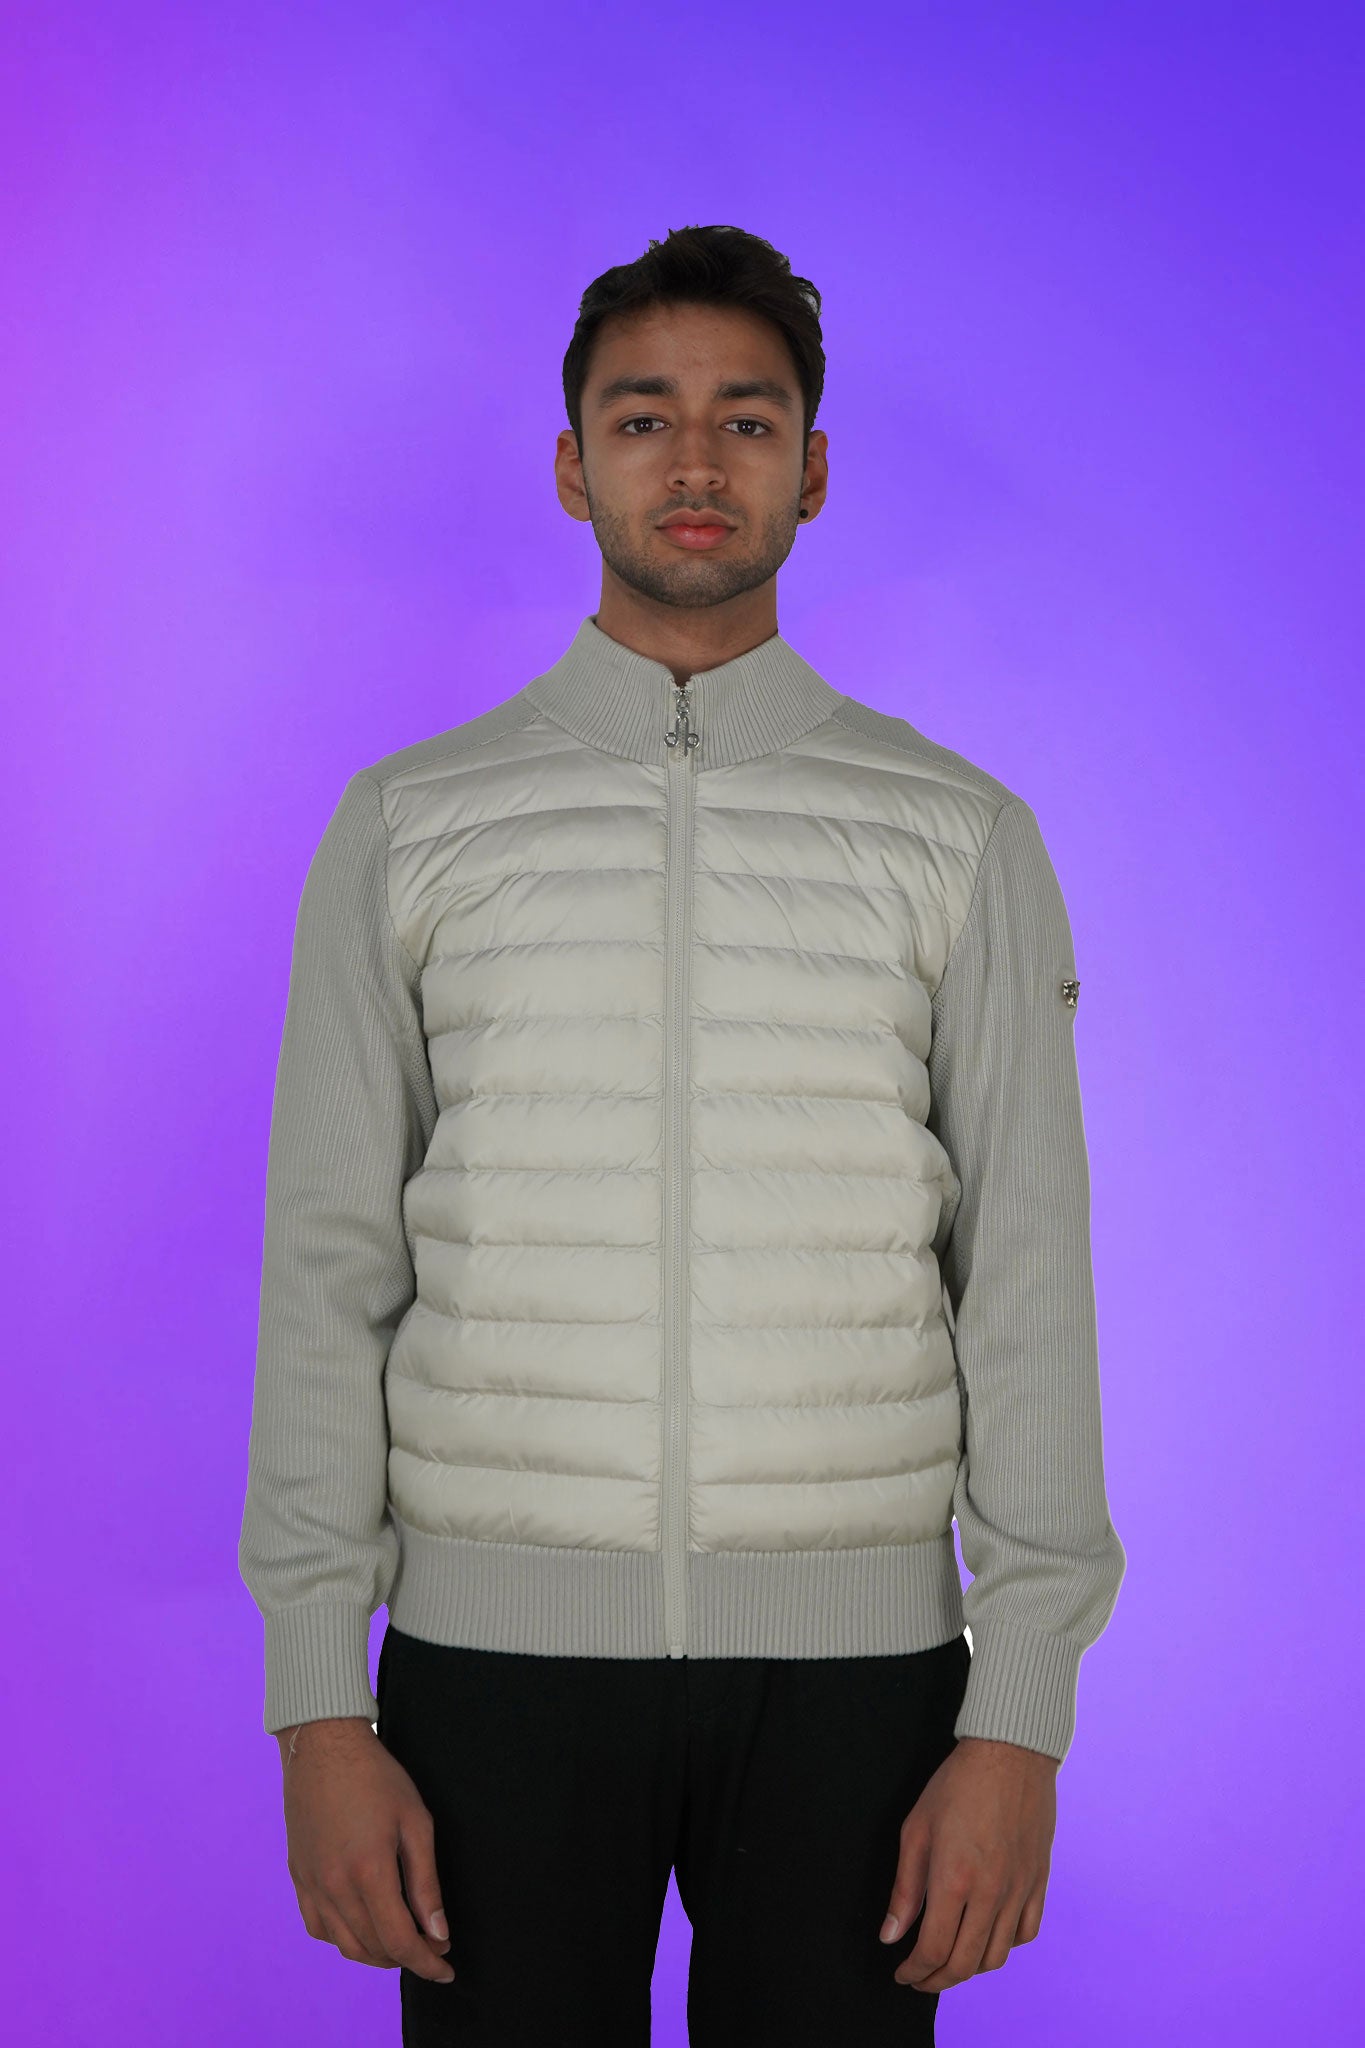 Woodpecker Men's Sweater Vest. High-end Canadian designer sweater vest for men in 